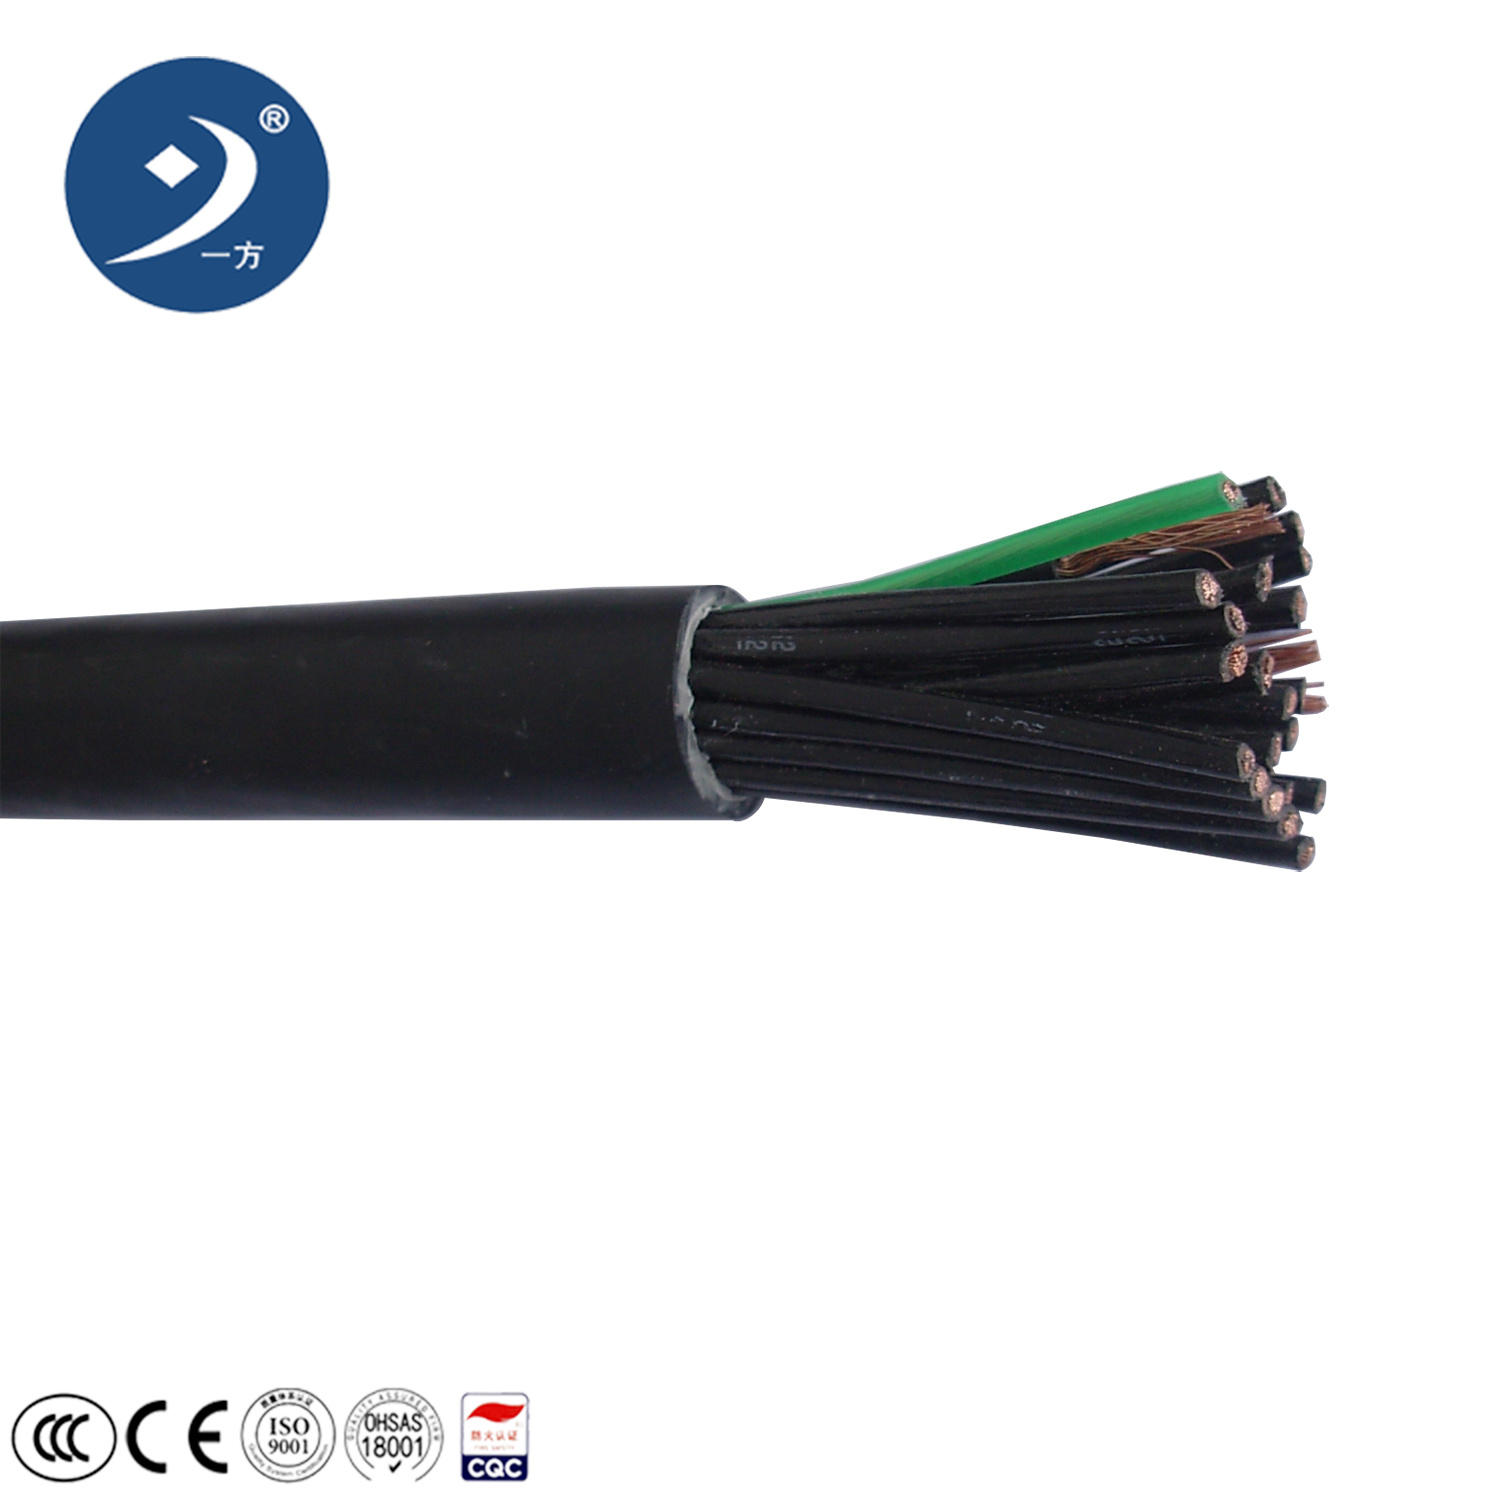 Zr Kvvrp Kvvp Kvv Multicore Flexible Control Electric Power Cable – 0.5mm2 X 16c